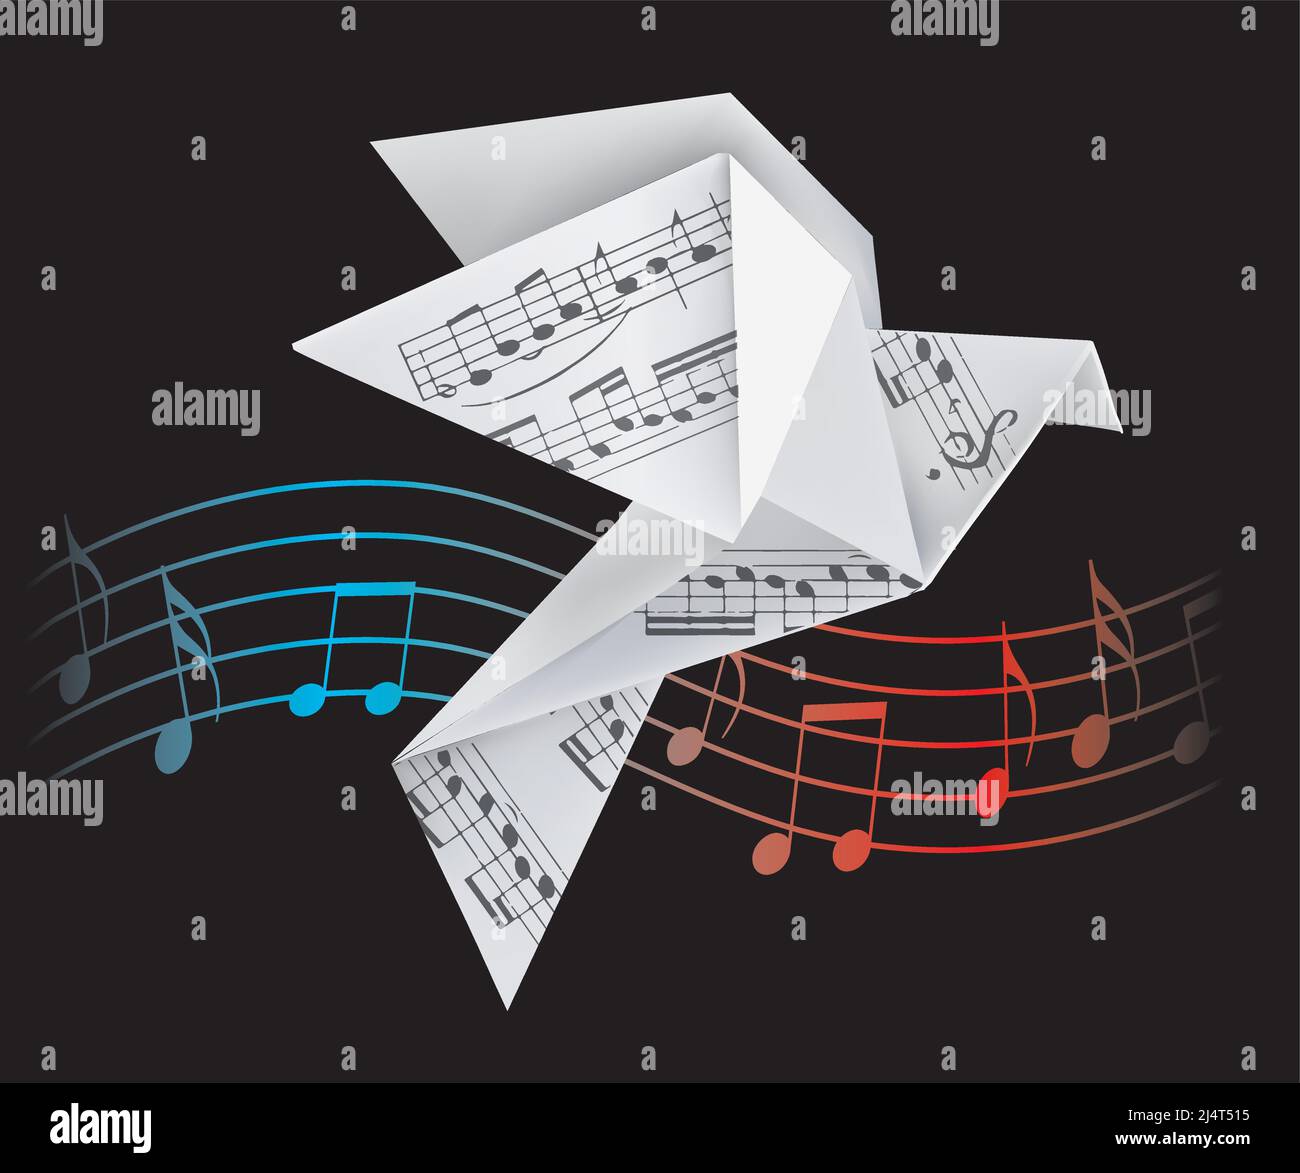 Origami-Tauben mit musikalischen Noten. Stilisierte Illustration von Papiertauben und Welle mit musikalischen Noten auf schwarzem Hintergrund. Poetisches musikalisches Motiv. Stock Vektor